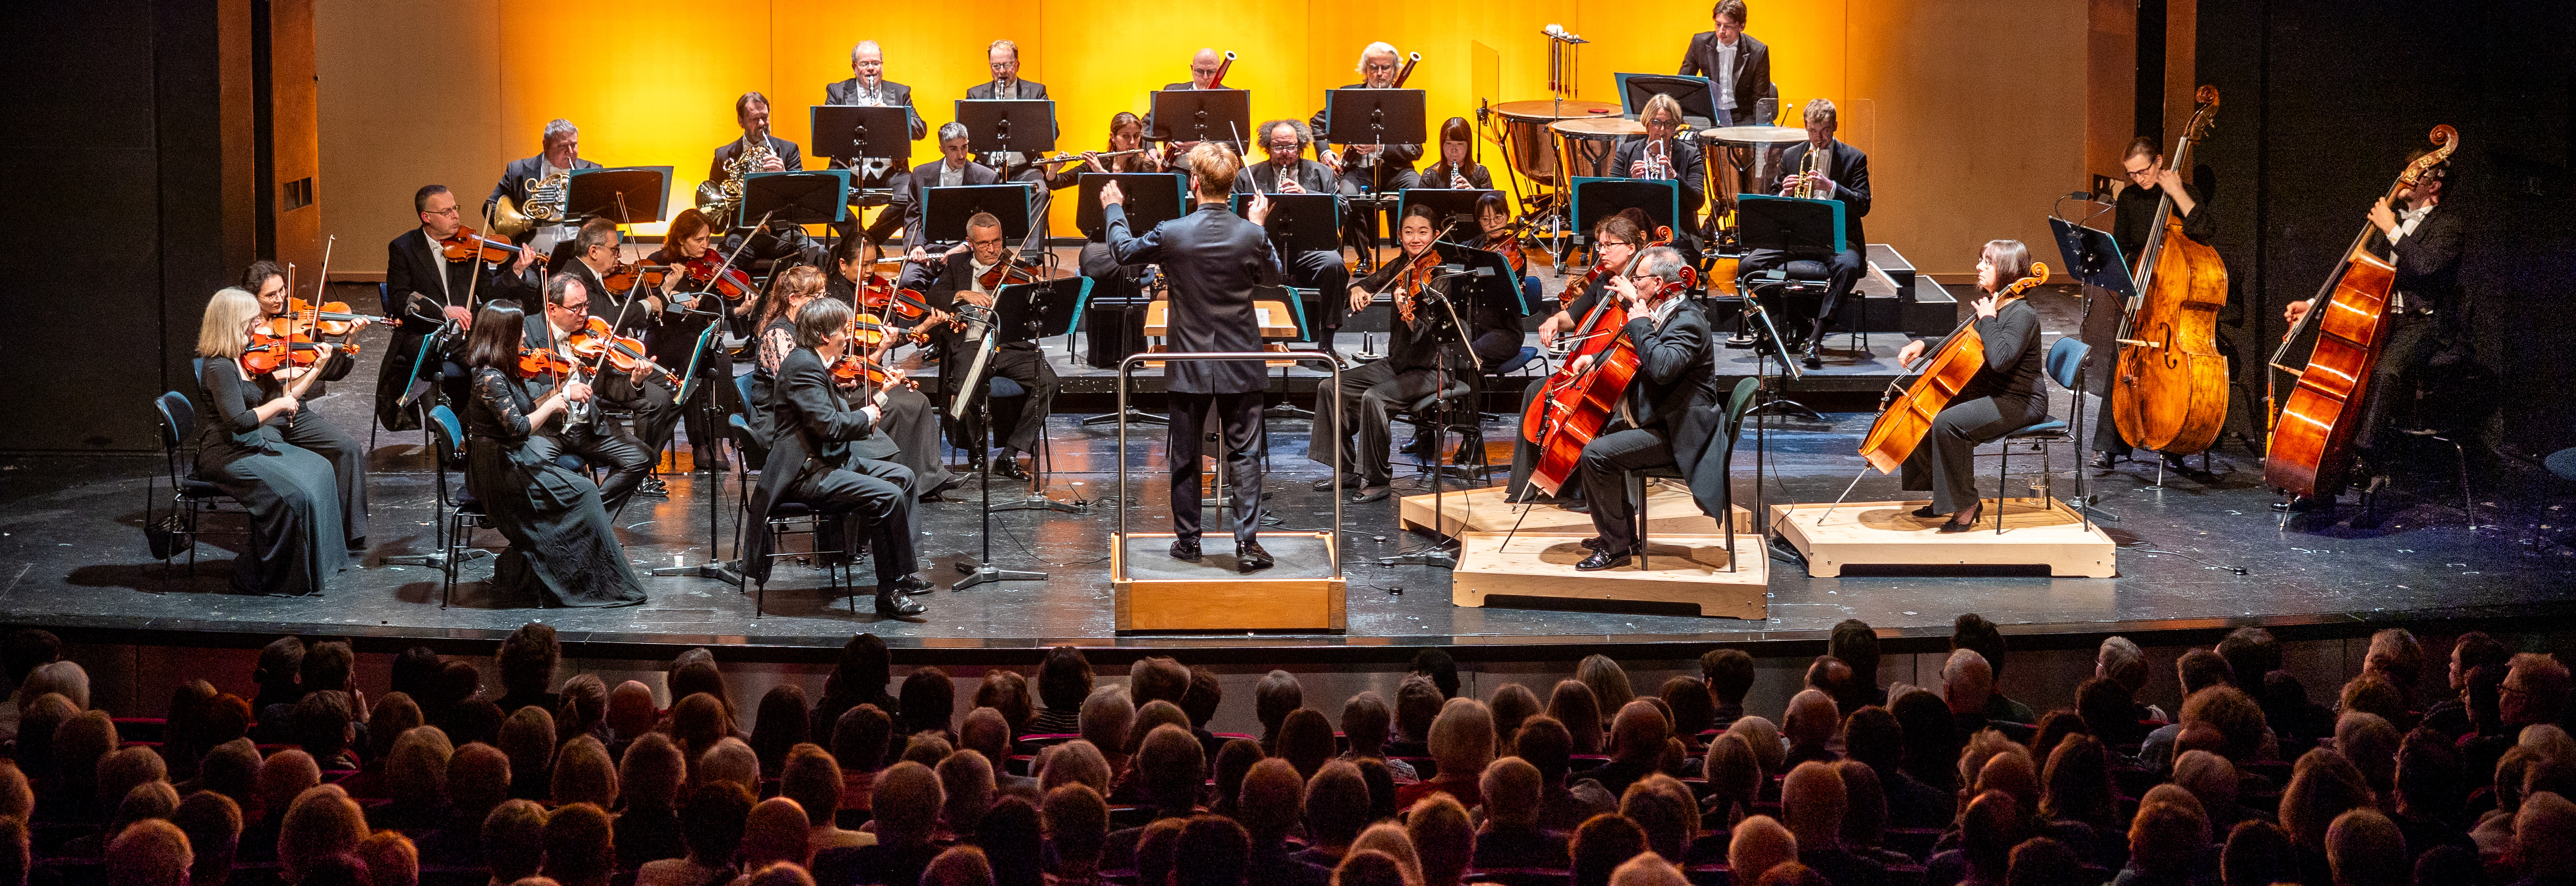 Die Lüneburger Symphoniker bei einem Konzert auf der Bühne des Theaters Lüneburg. Das Orchester spielt unter der Leitung eines Dirigenten vor einem beleuchteten Hintergrund, während das Publikum zuschaut.